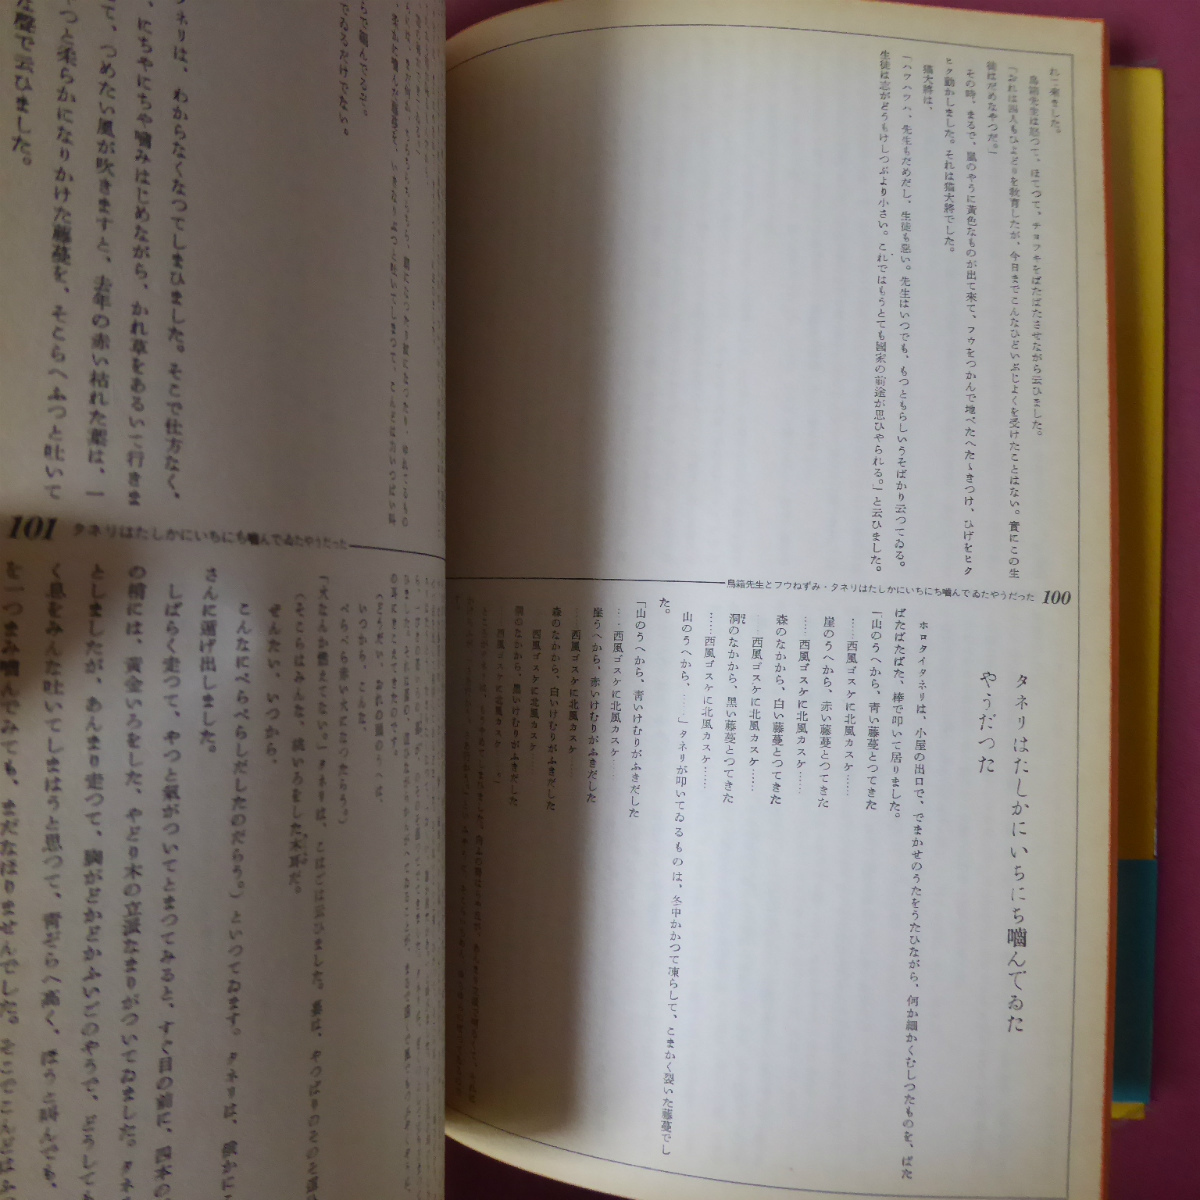 θ8[ The *.. Miyazawa Kenji все один шт. /1991 год no. 7 версия * третий документ павильон ] сказка .. документ / поэзия @3